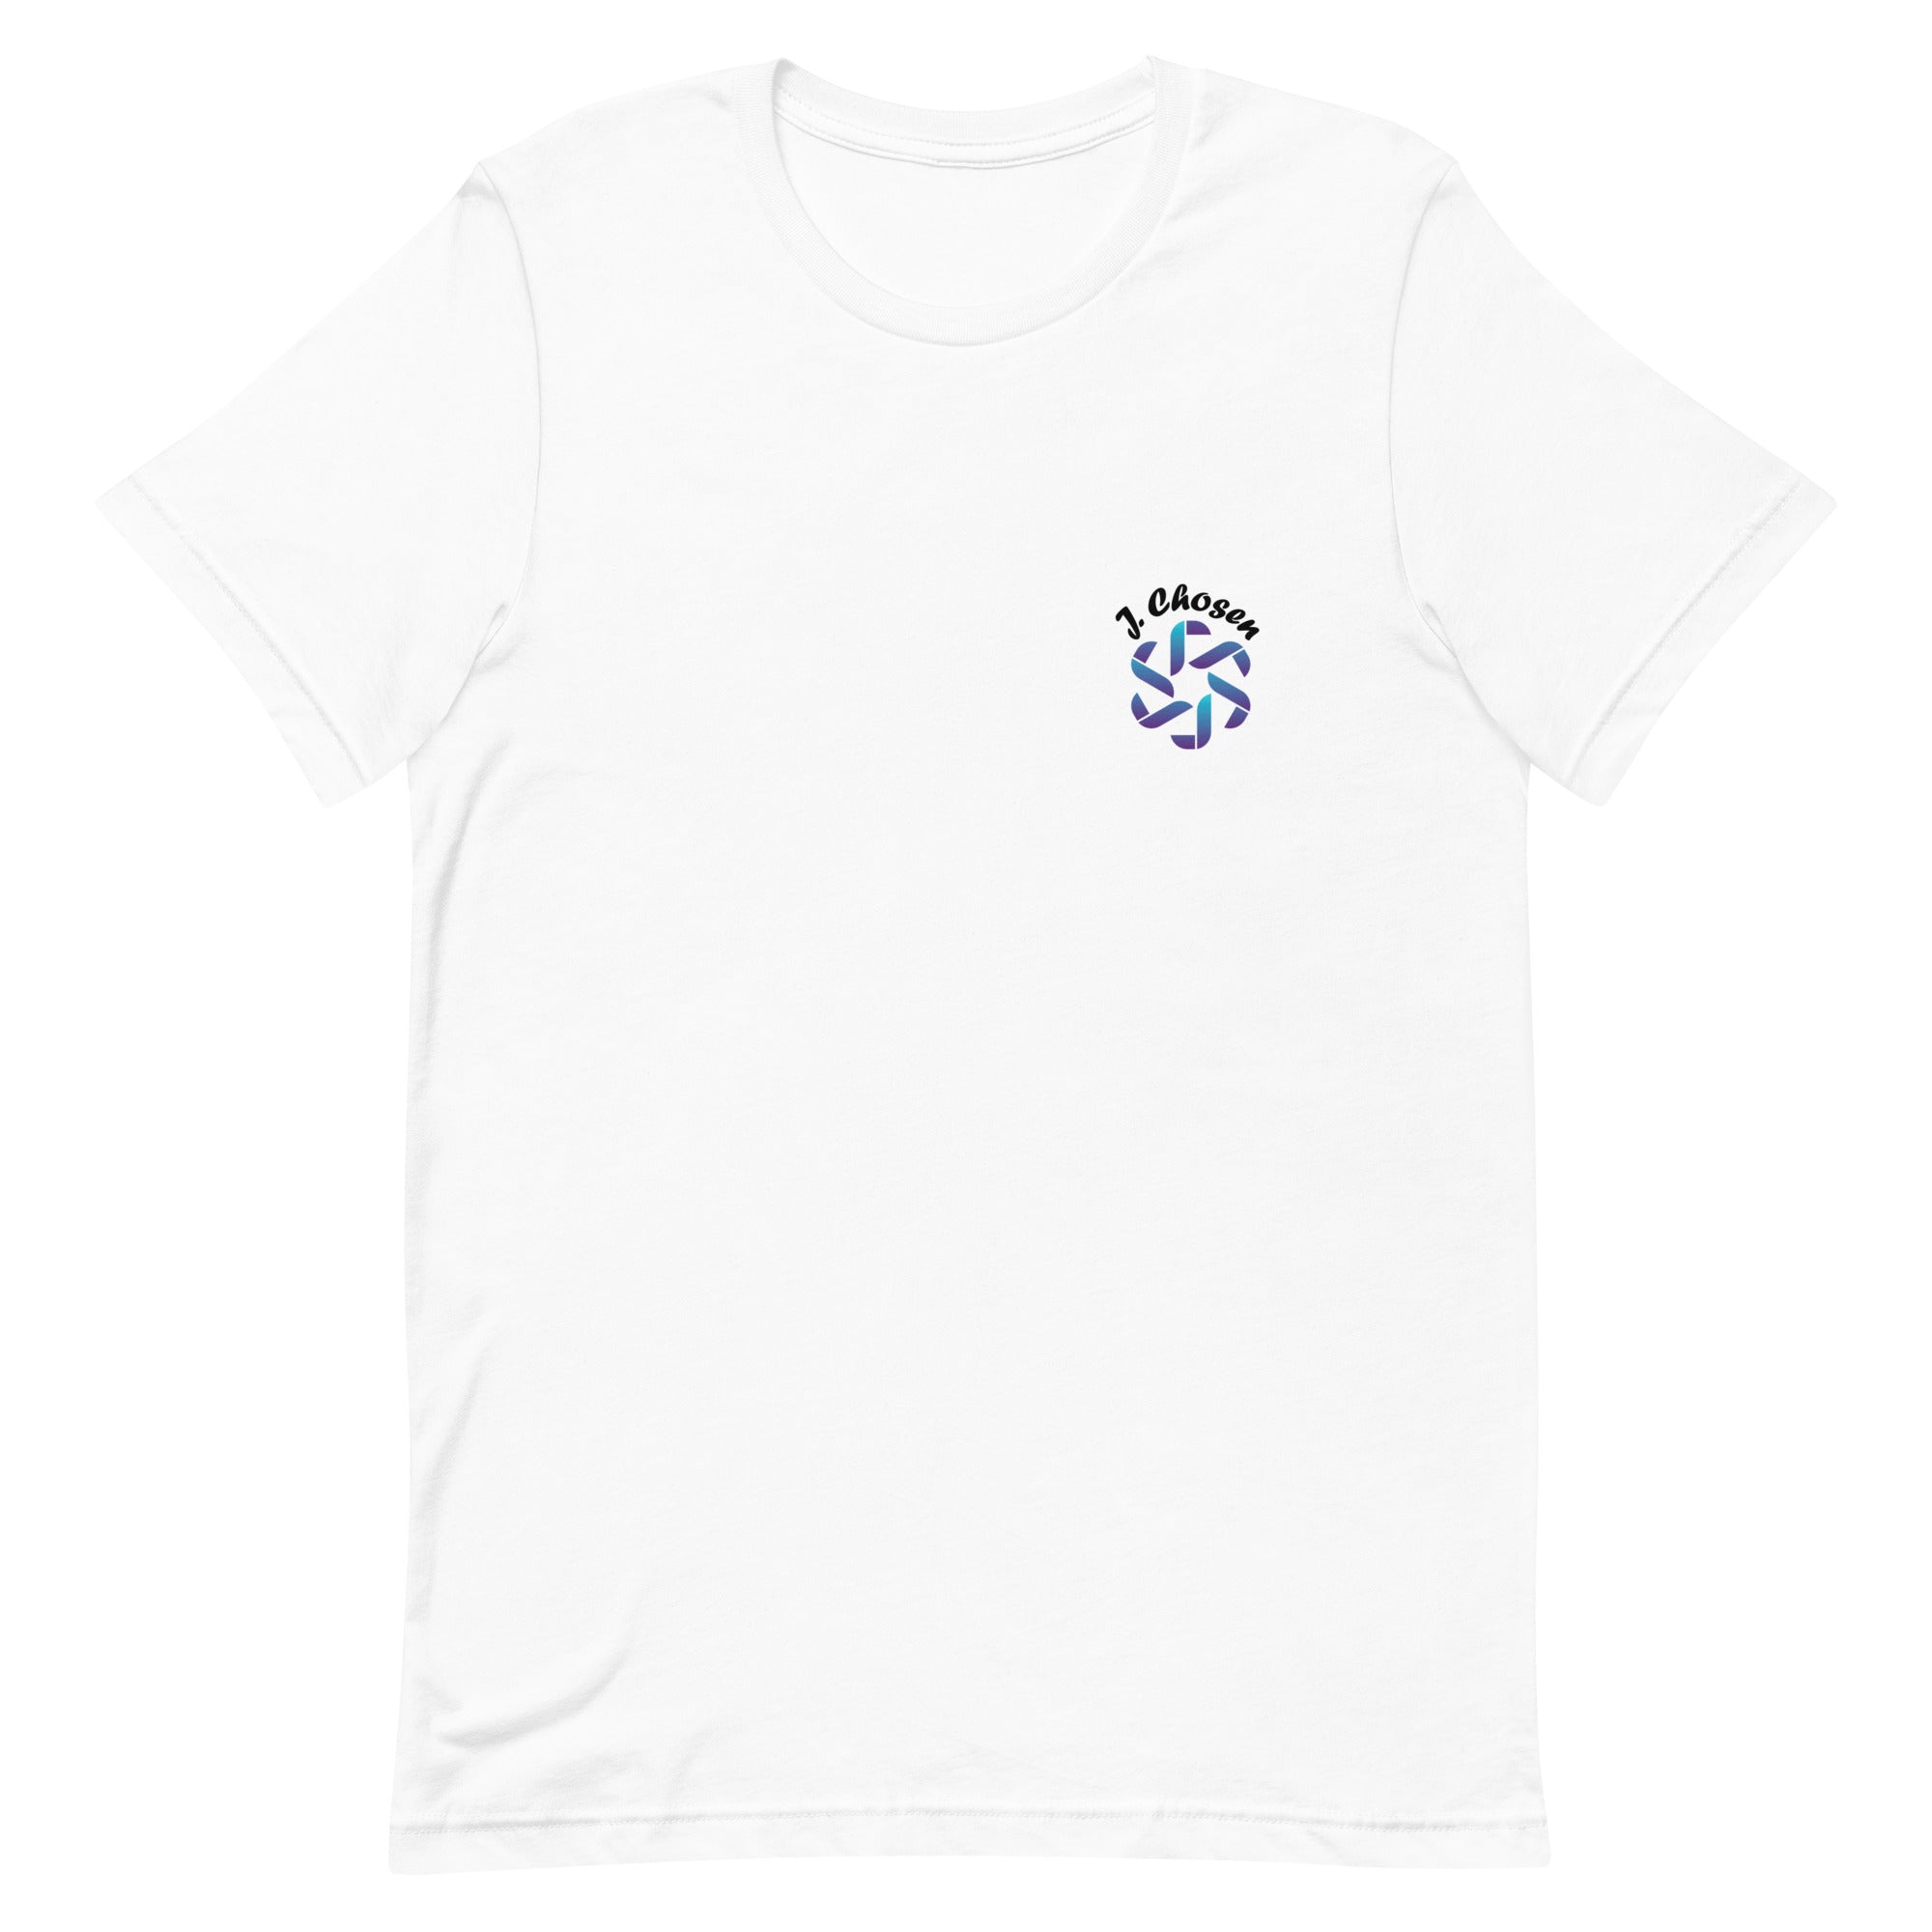 Jchosen - Unisex t-shirt